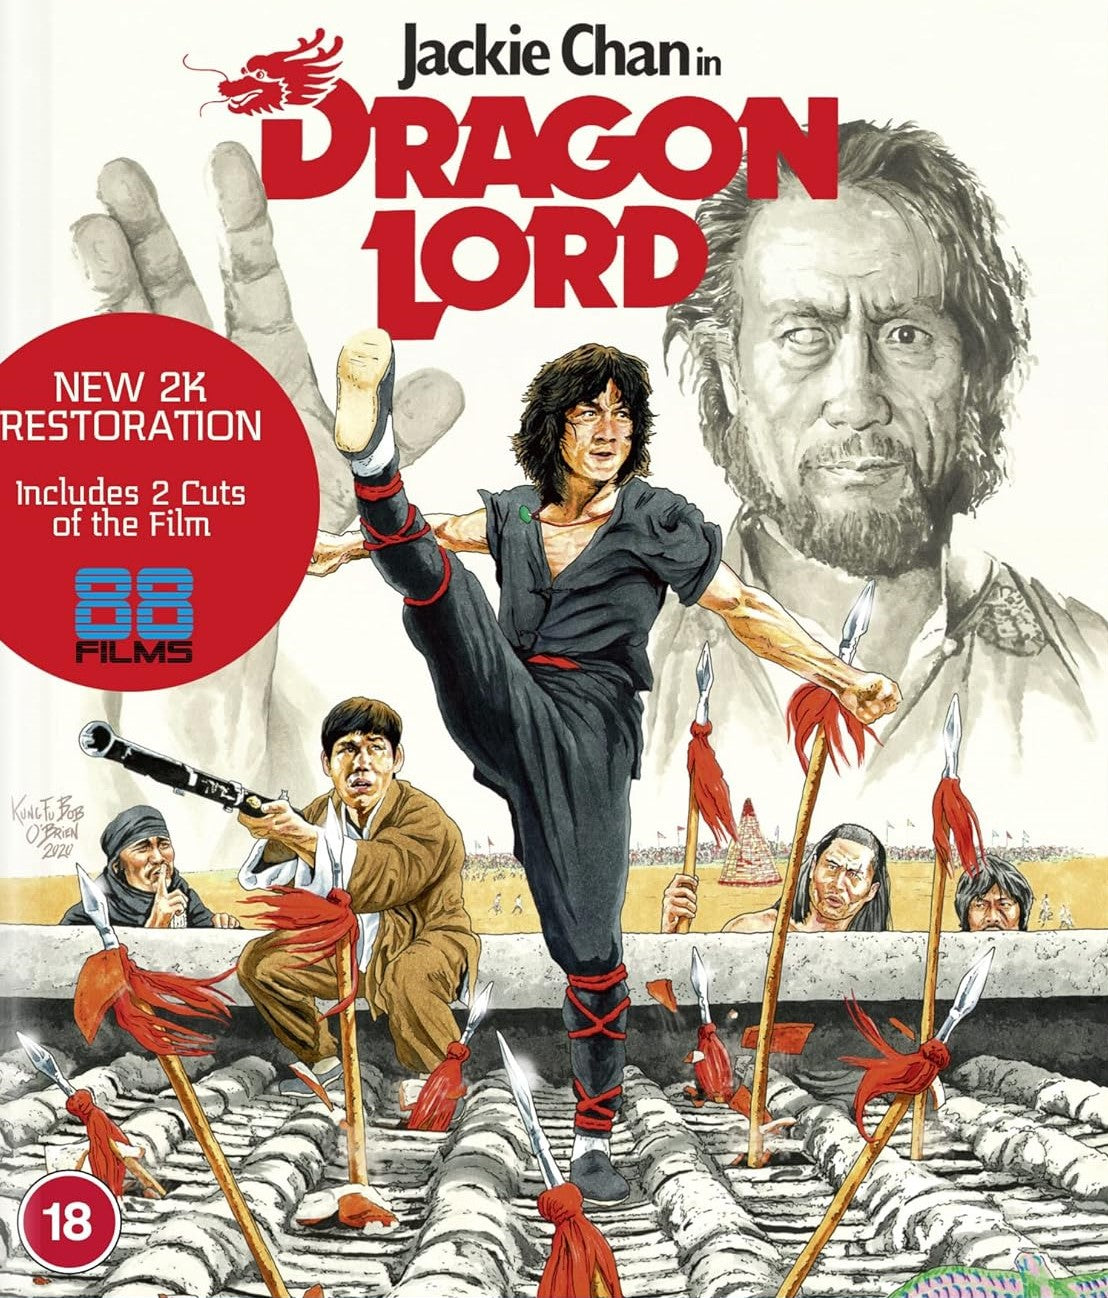 Dragon Lord 88 Films Blu-Ray [NEW]